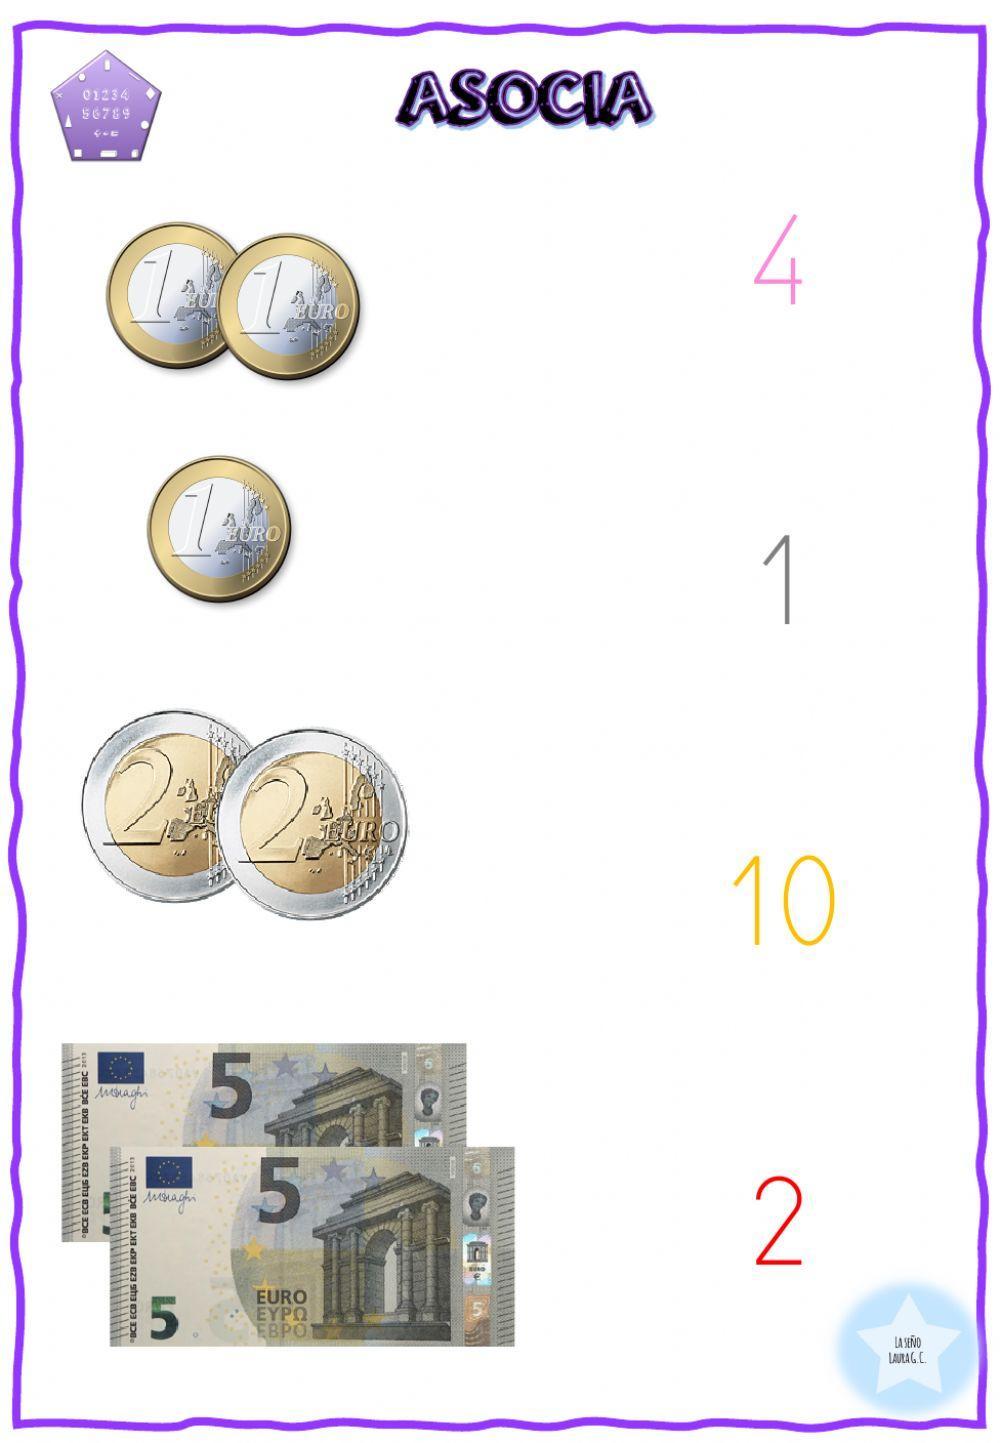 Asocia euros cantidad